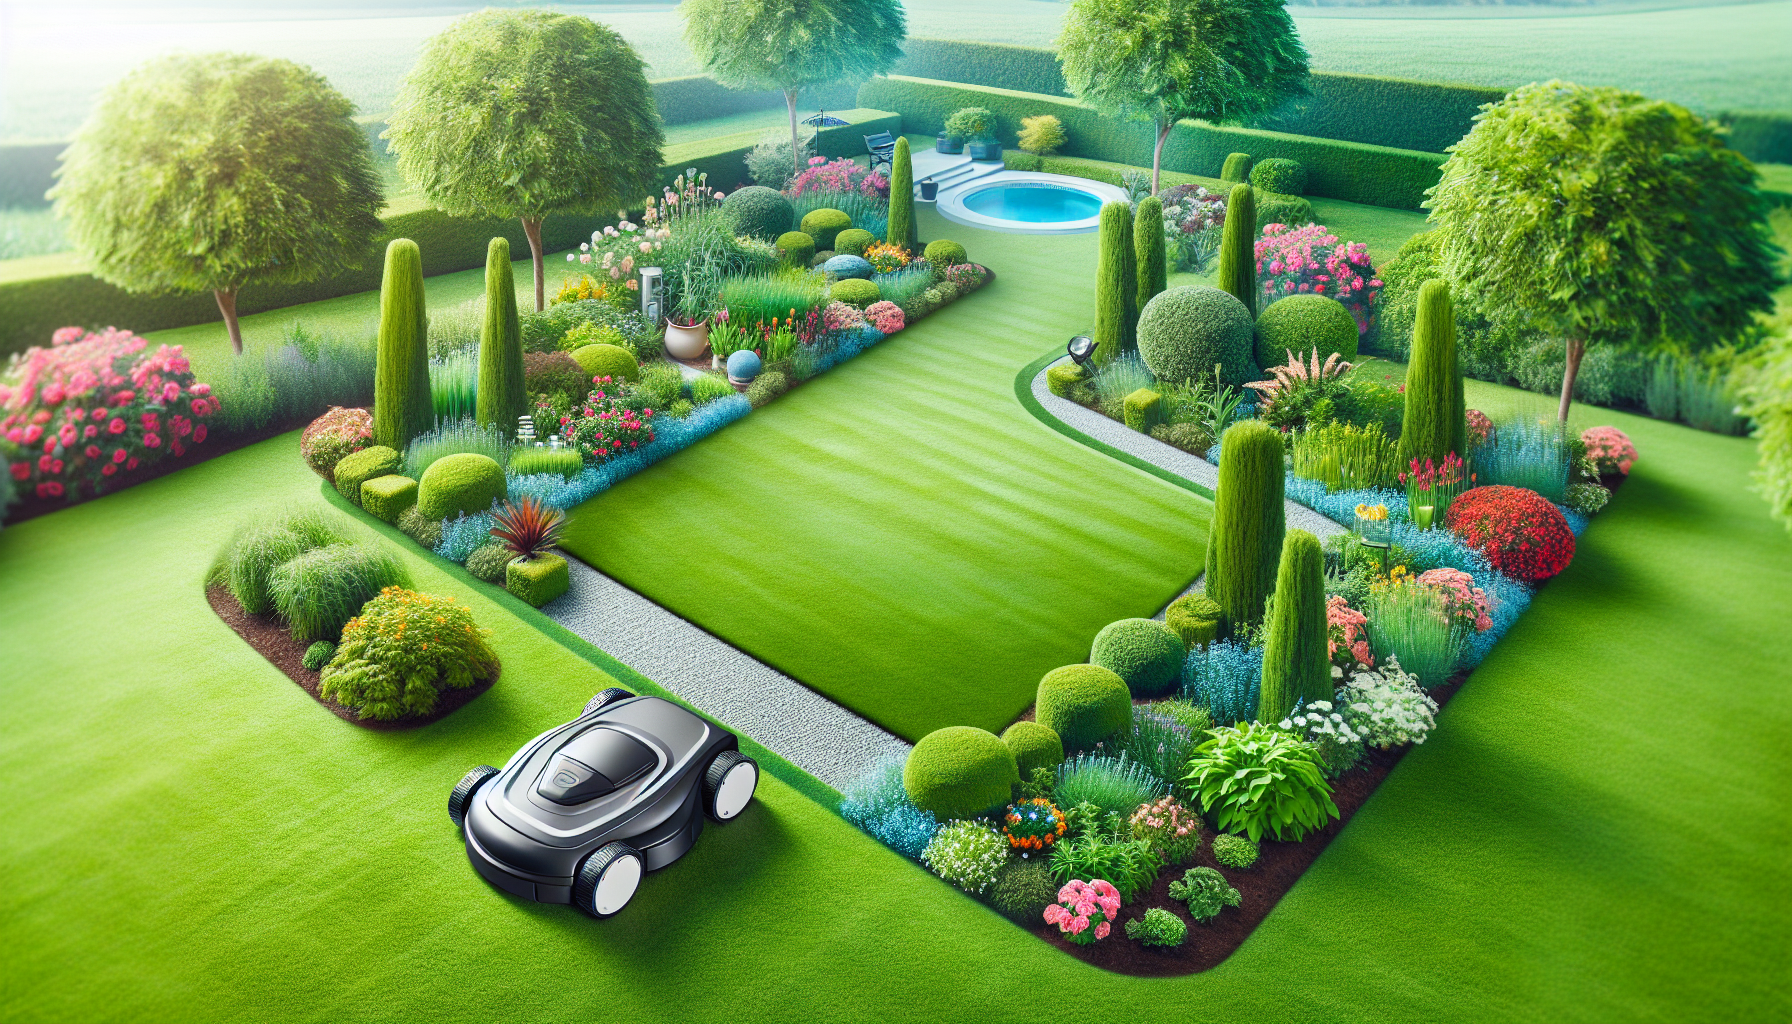 découvrez la robot tondeuse 600 m2, la solution idéale pour entretenir votre jardin sans effort et obtenir un résultat impeccable.